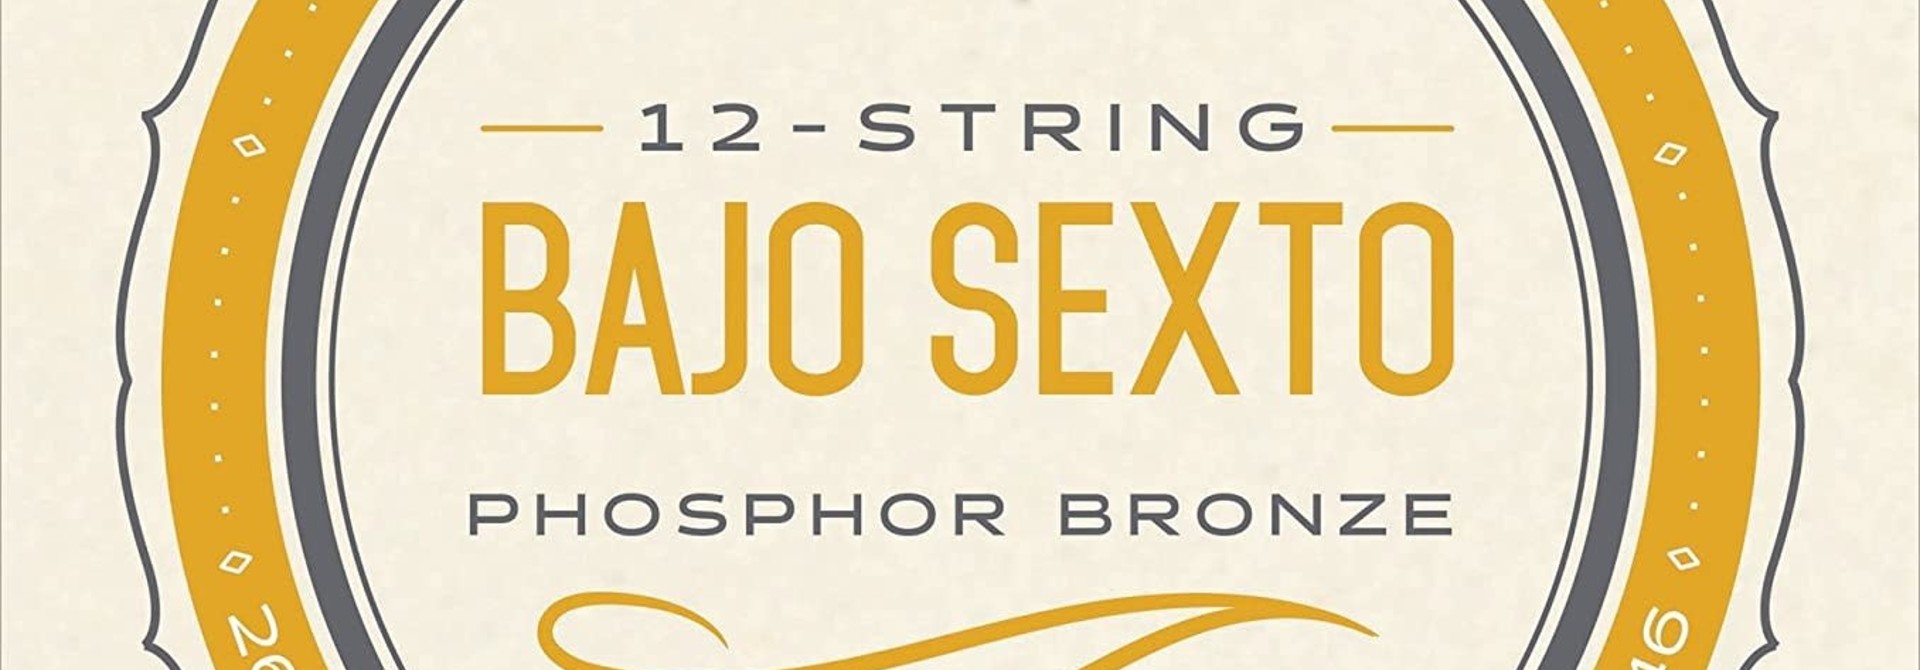 D'addario EJ86 Bajo Sexto Strings Phosphor Bronze Loop End